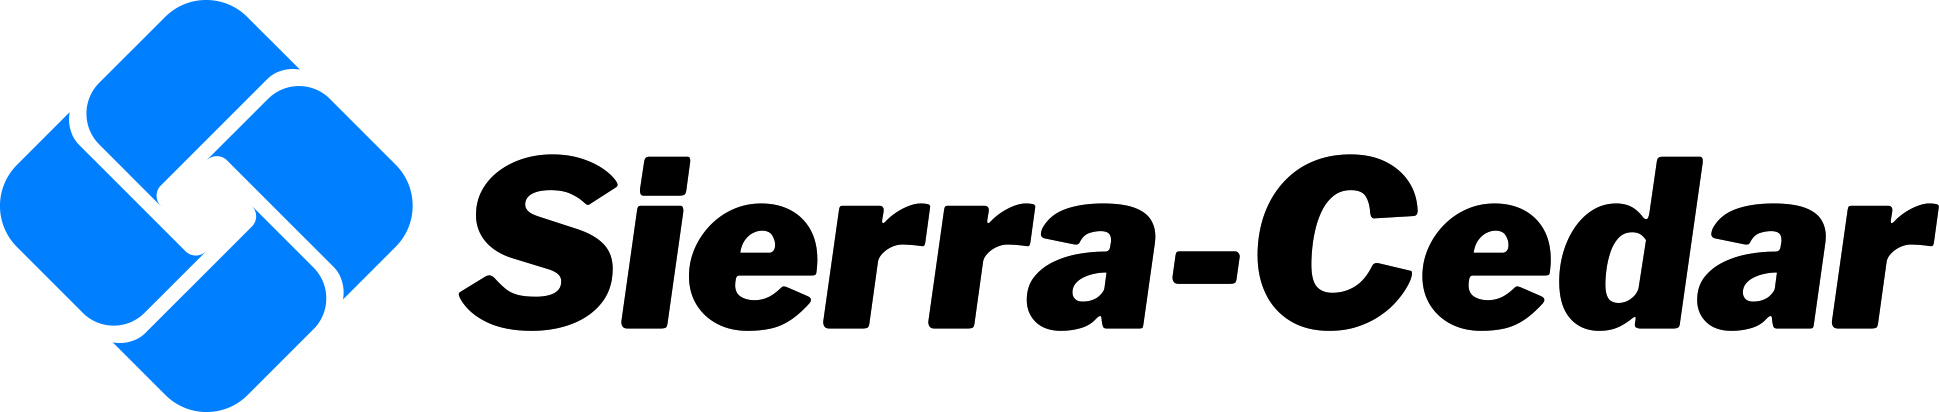 Sierra-Cedar